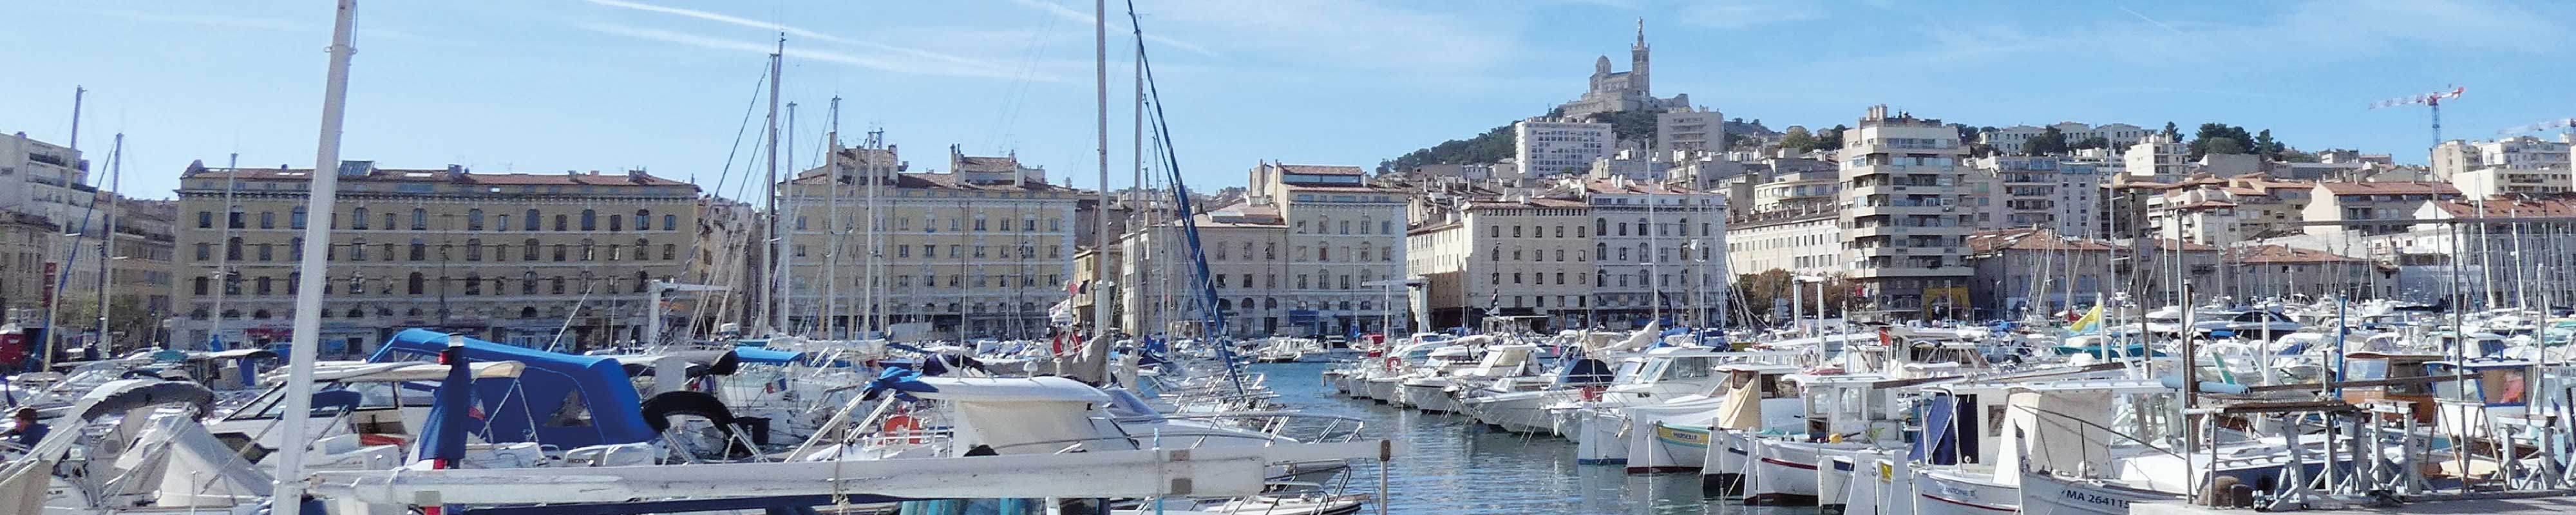 Luggage Storage | Old Port in Marseille - Nannybag